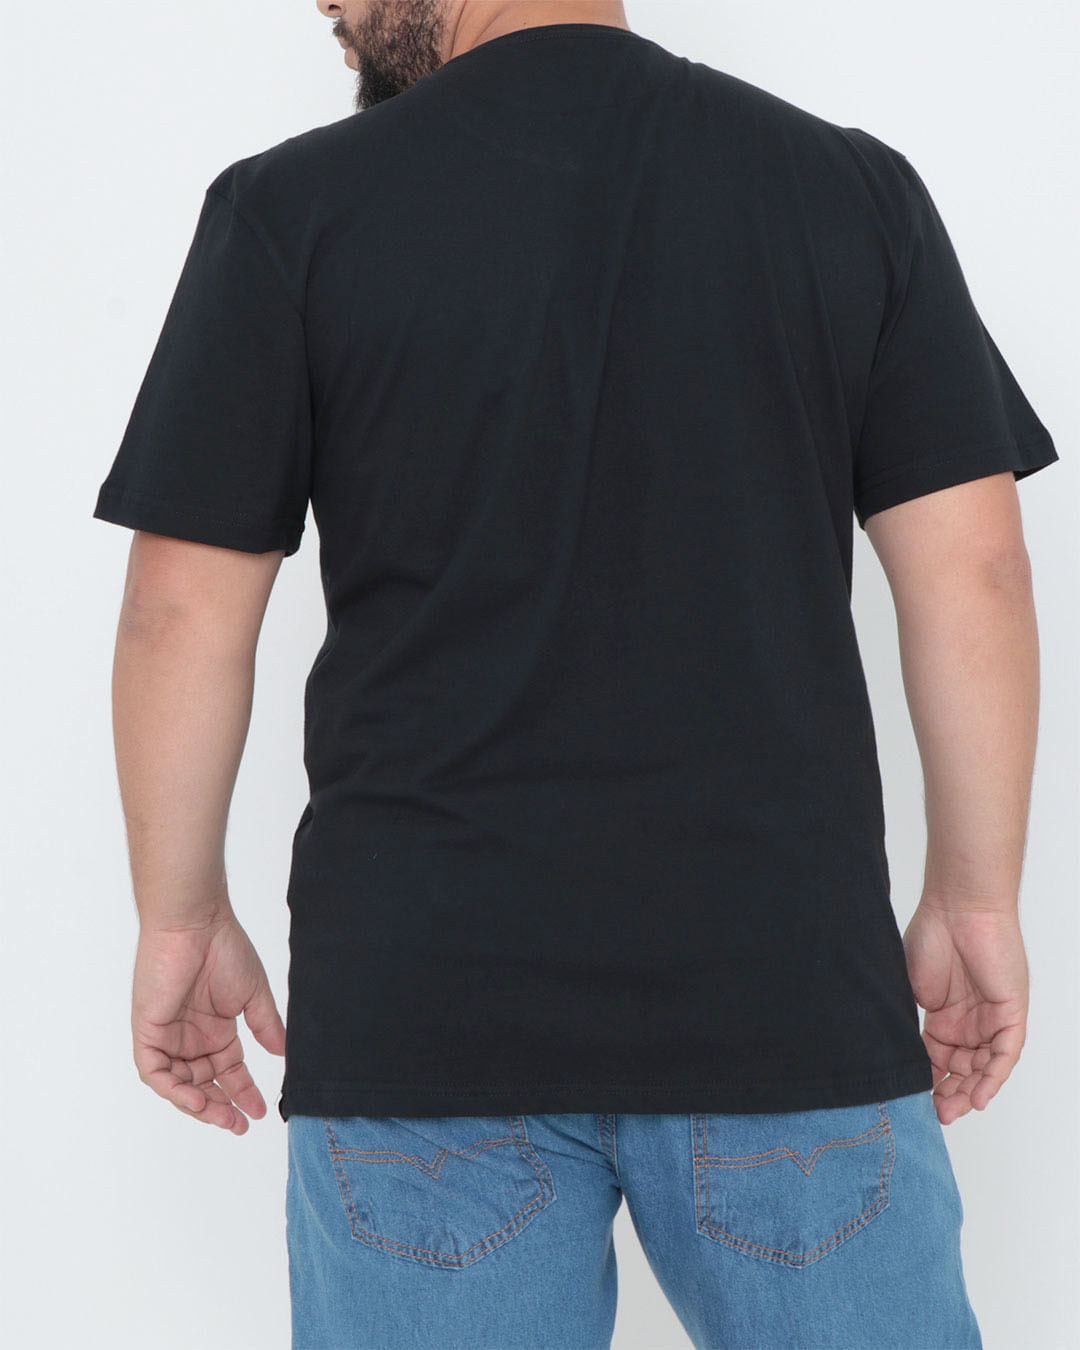 Camiseta-Plus-Size-Estampa-Caveira-Preta